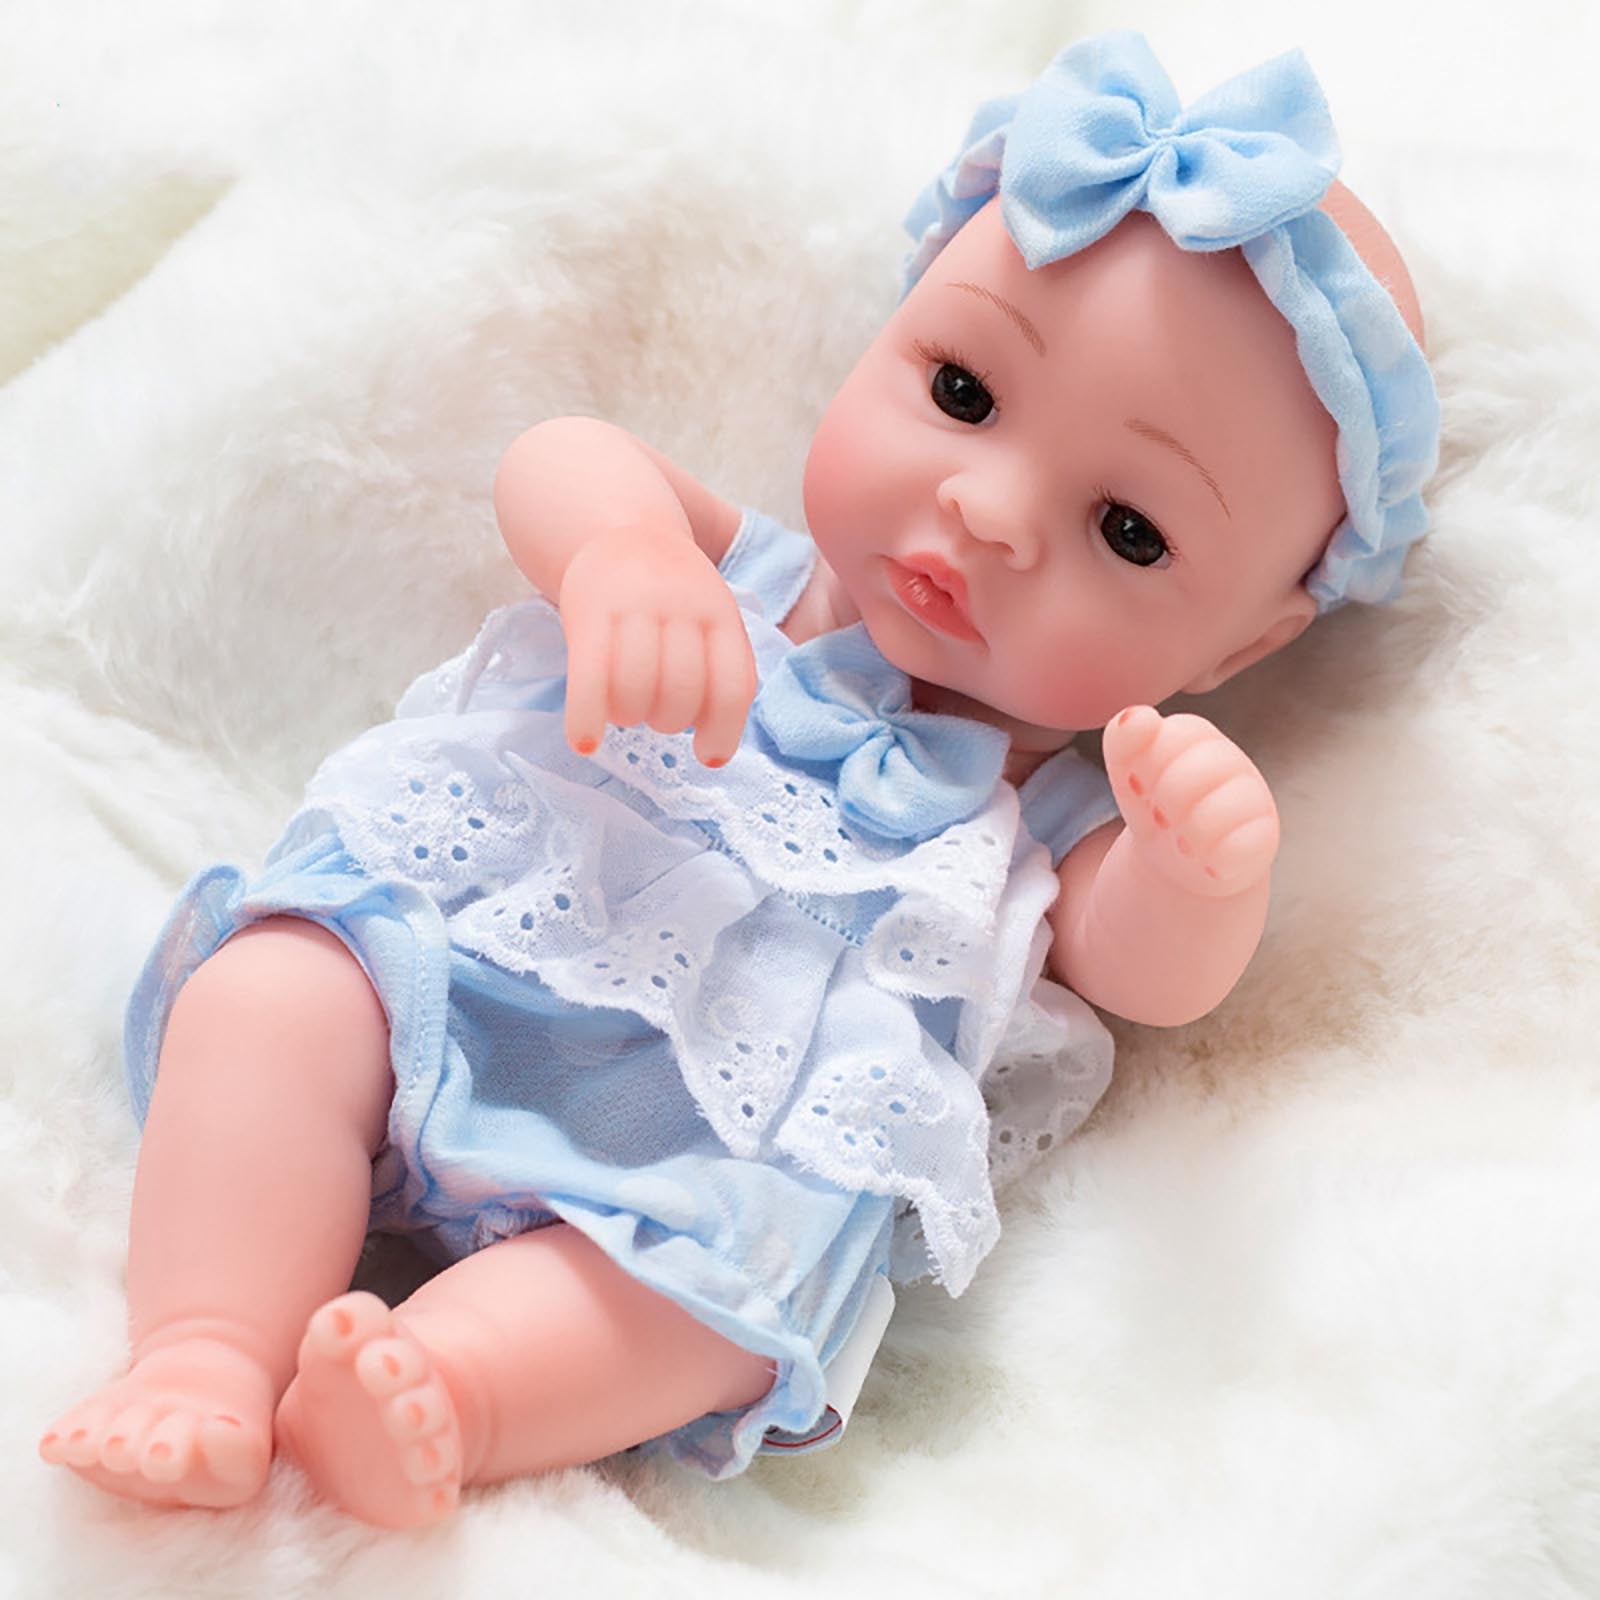 RSG 16 Inch Lifelike Reborn Baby Dolls - Full Silicone Reborn Baby